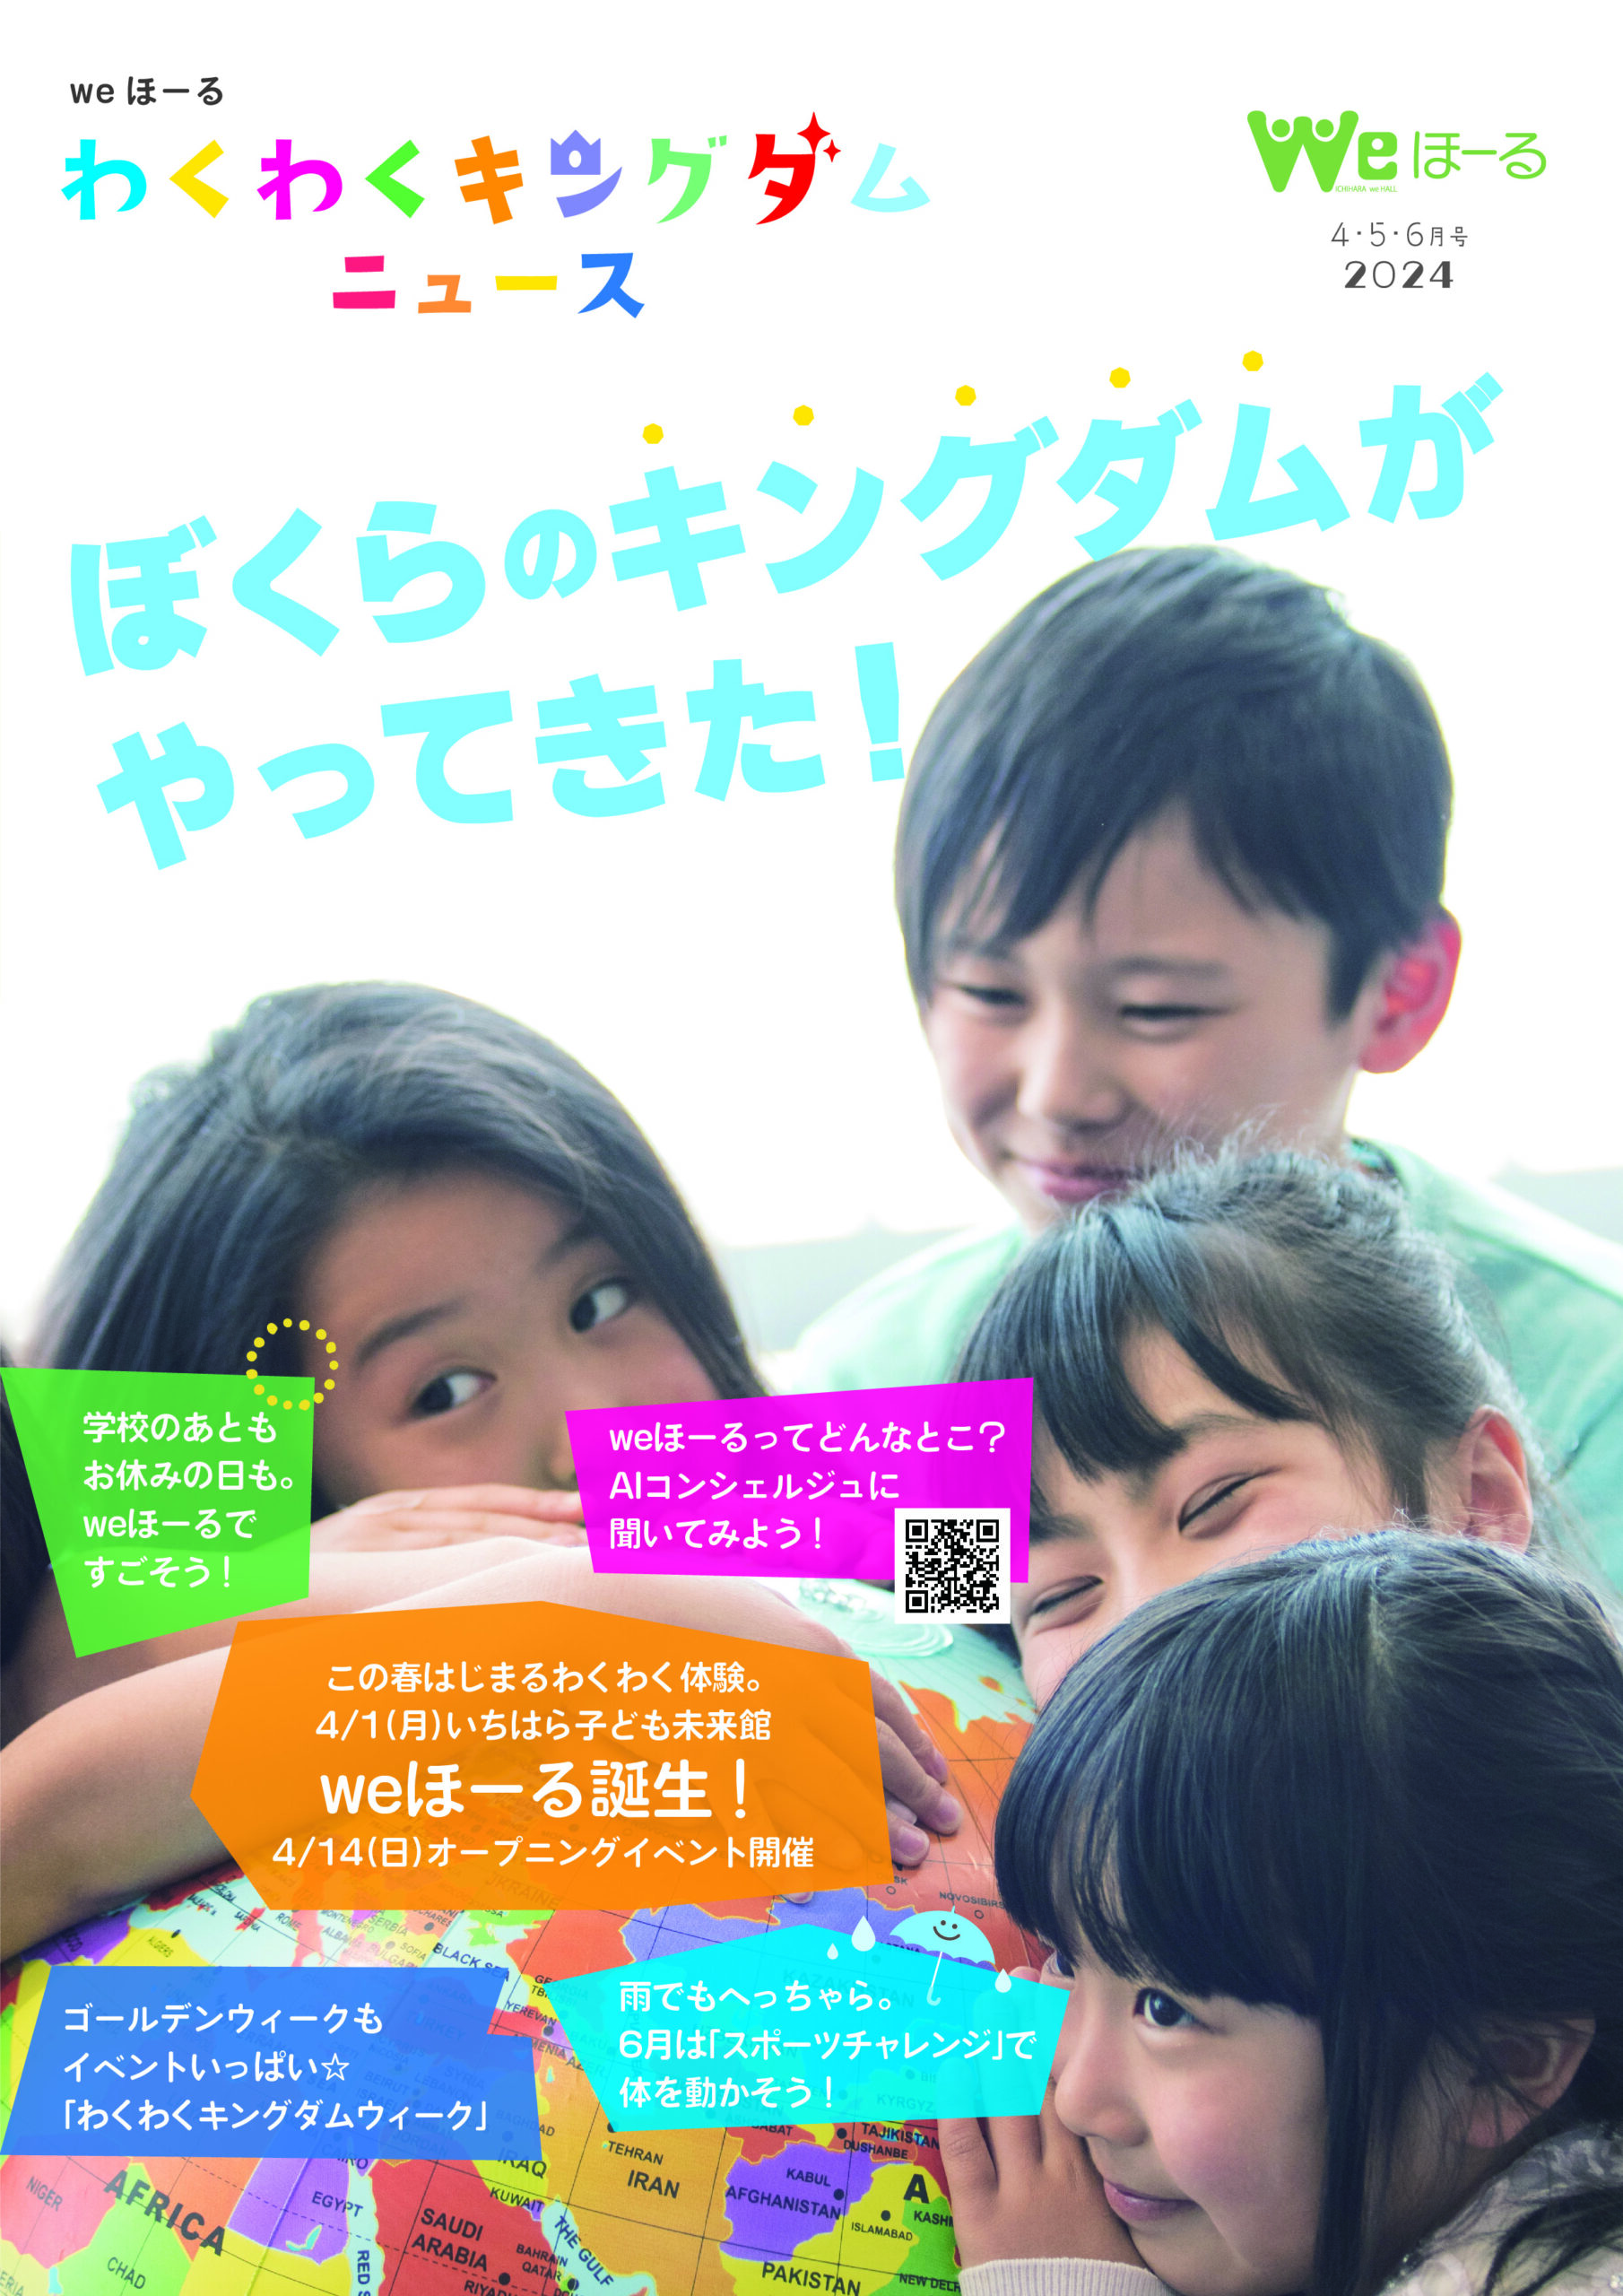 Information magazine “Wakuwaku Kingdom News” 4/1 issue